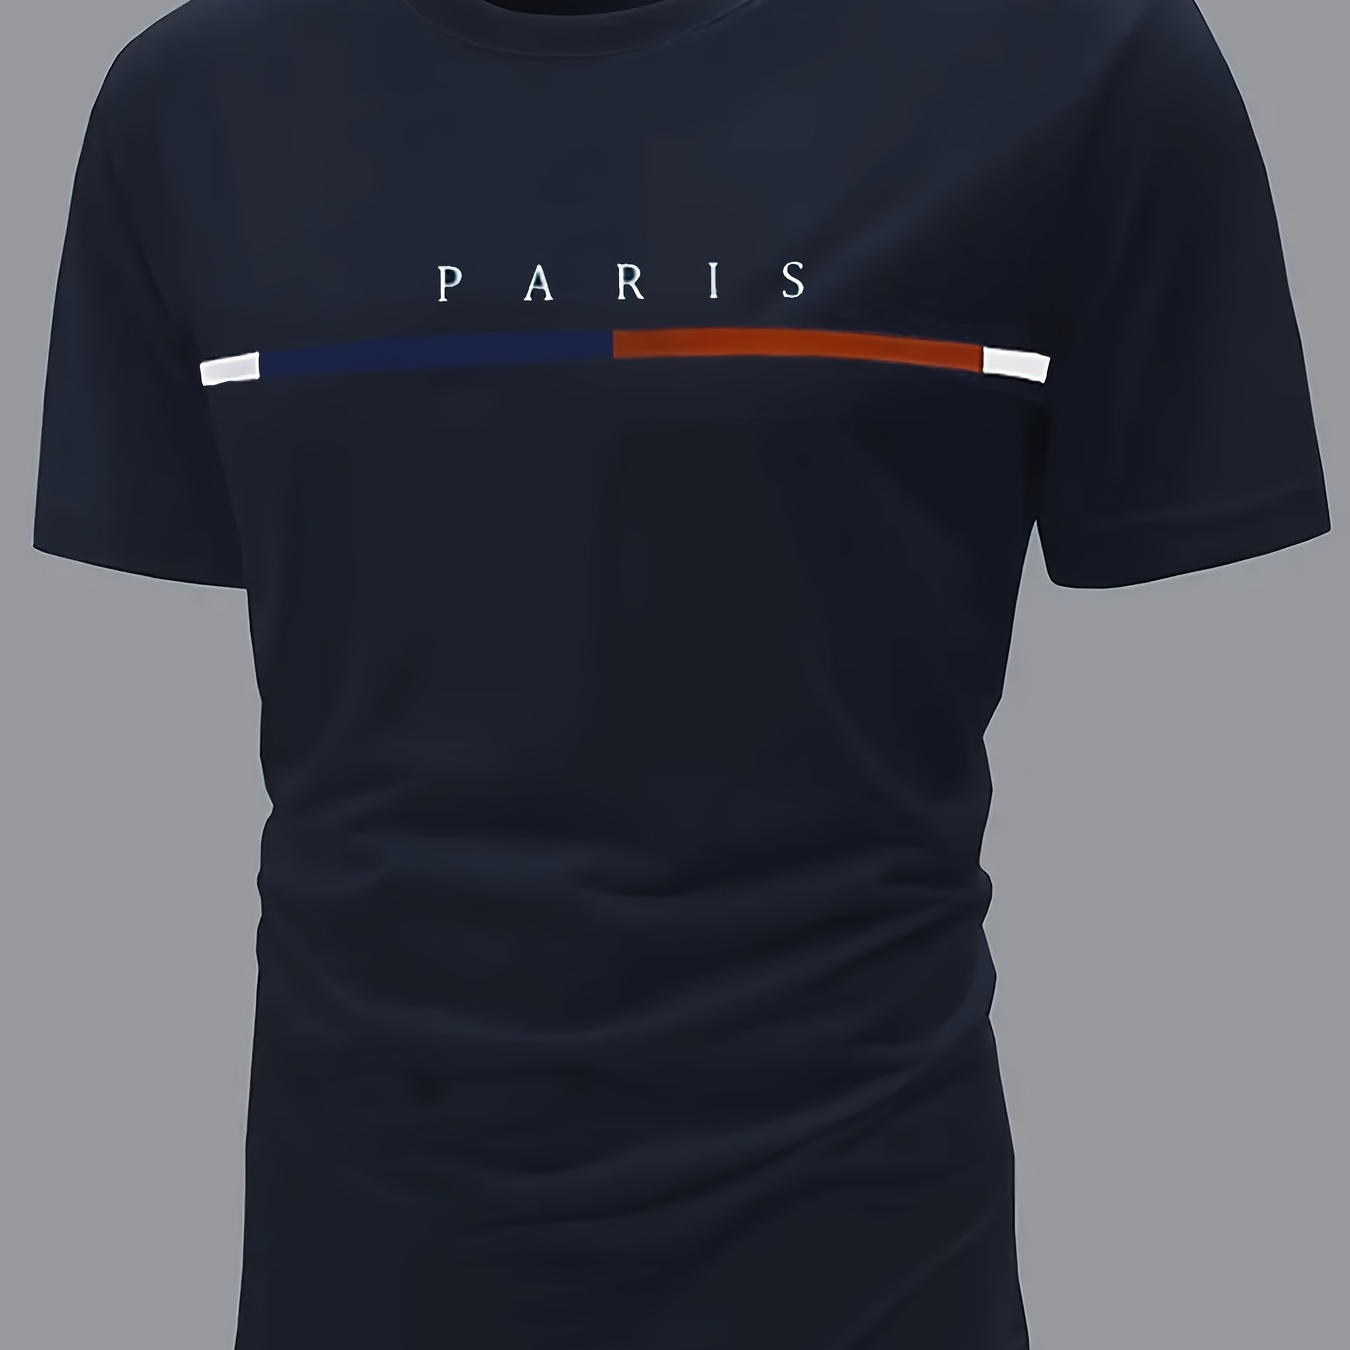 

T-shirt ras du cou à manches courtes pour homme, motif à rayures françaises et imprimé "PARIS", haut décontracté et chic pour les sorties estivales en plein air.